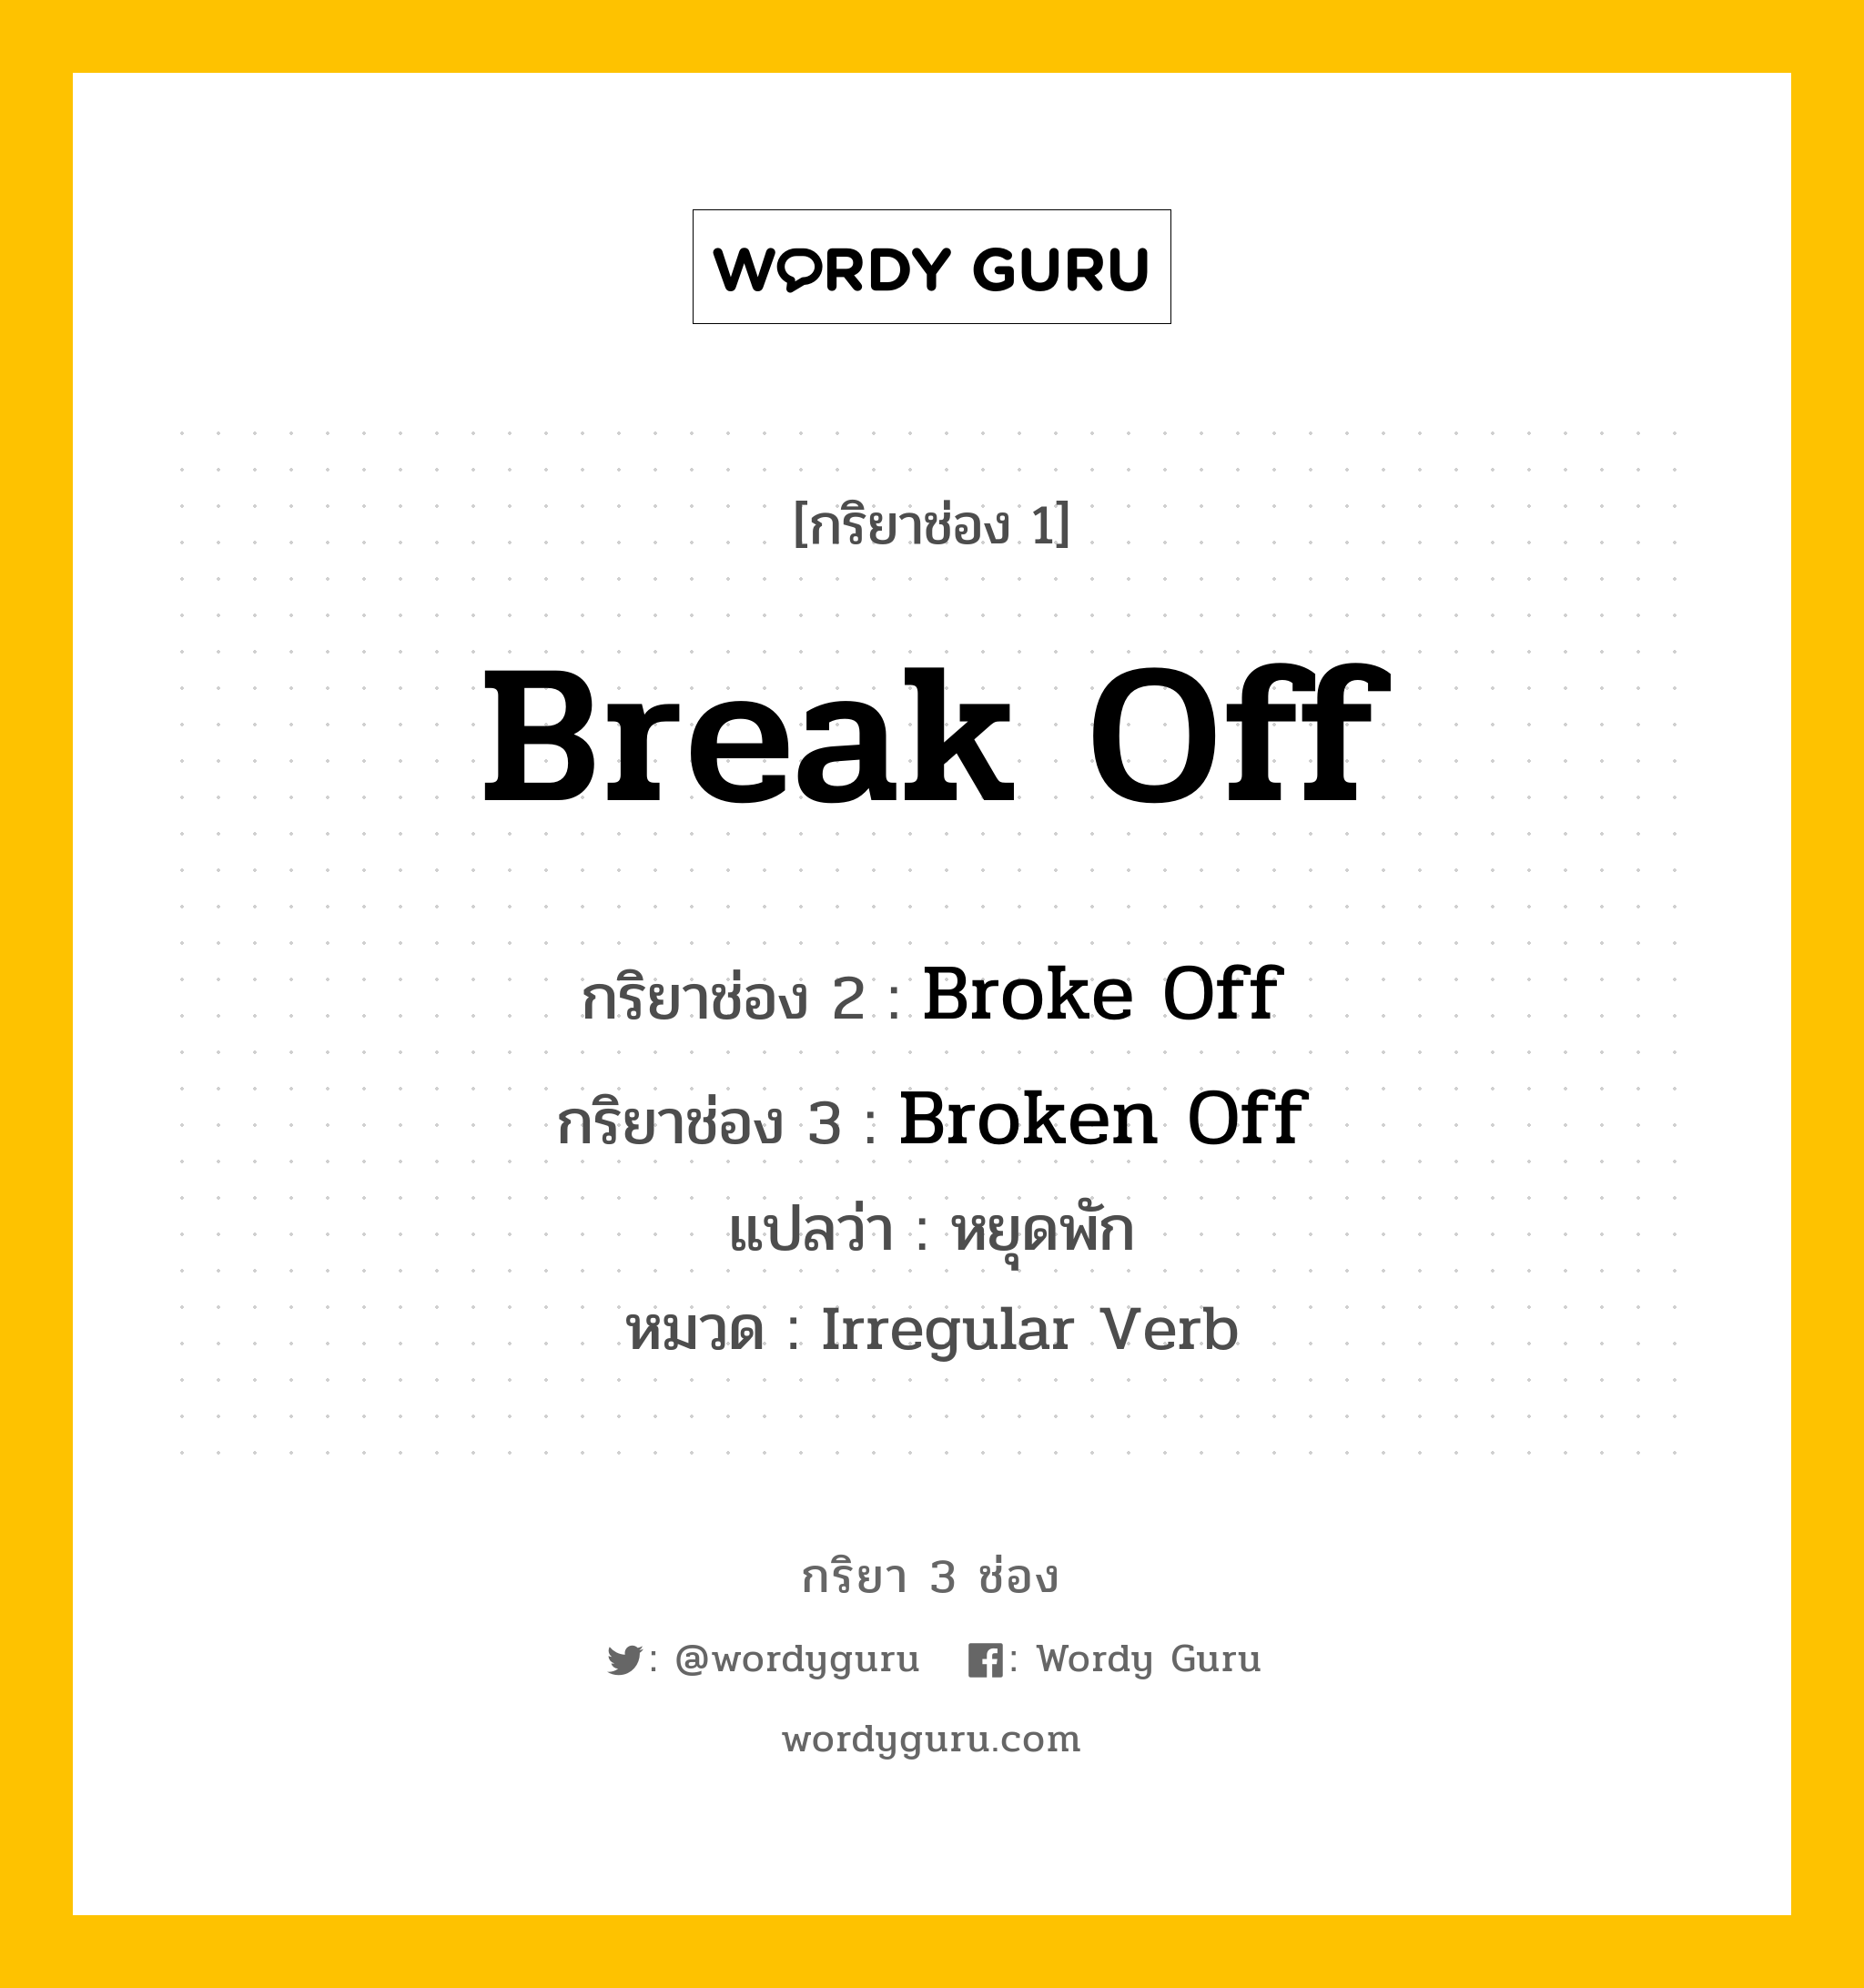 Break Off มีกริยา 3 ช่องอะไรบ้าง? คำศัพท์ในกลุ่มประเภท Irregular Verb, กริยาช่อง 1 Break Off กริยาช่อง 2 Broke Off กริยาช่อง 3 Broken Off แปลว่า หยุดพัก หมวด Irregular Verb หมวด Irregular Verb